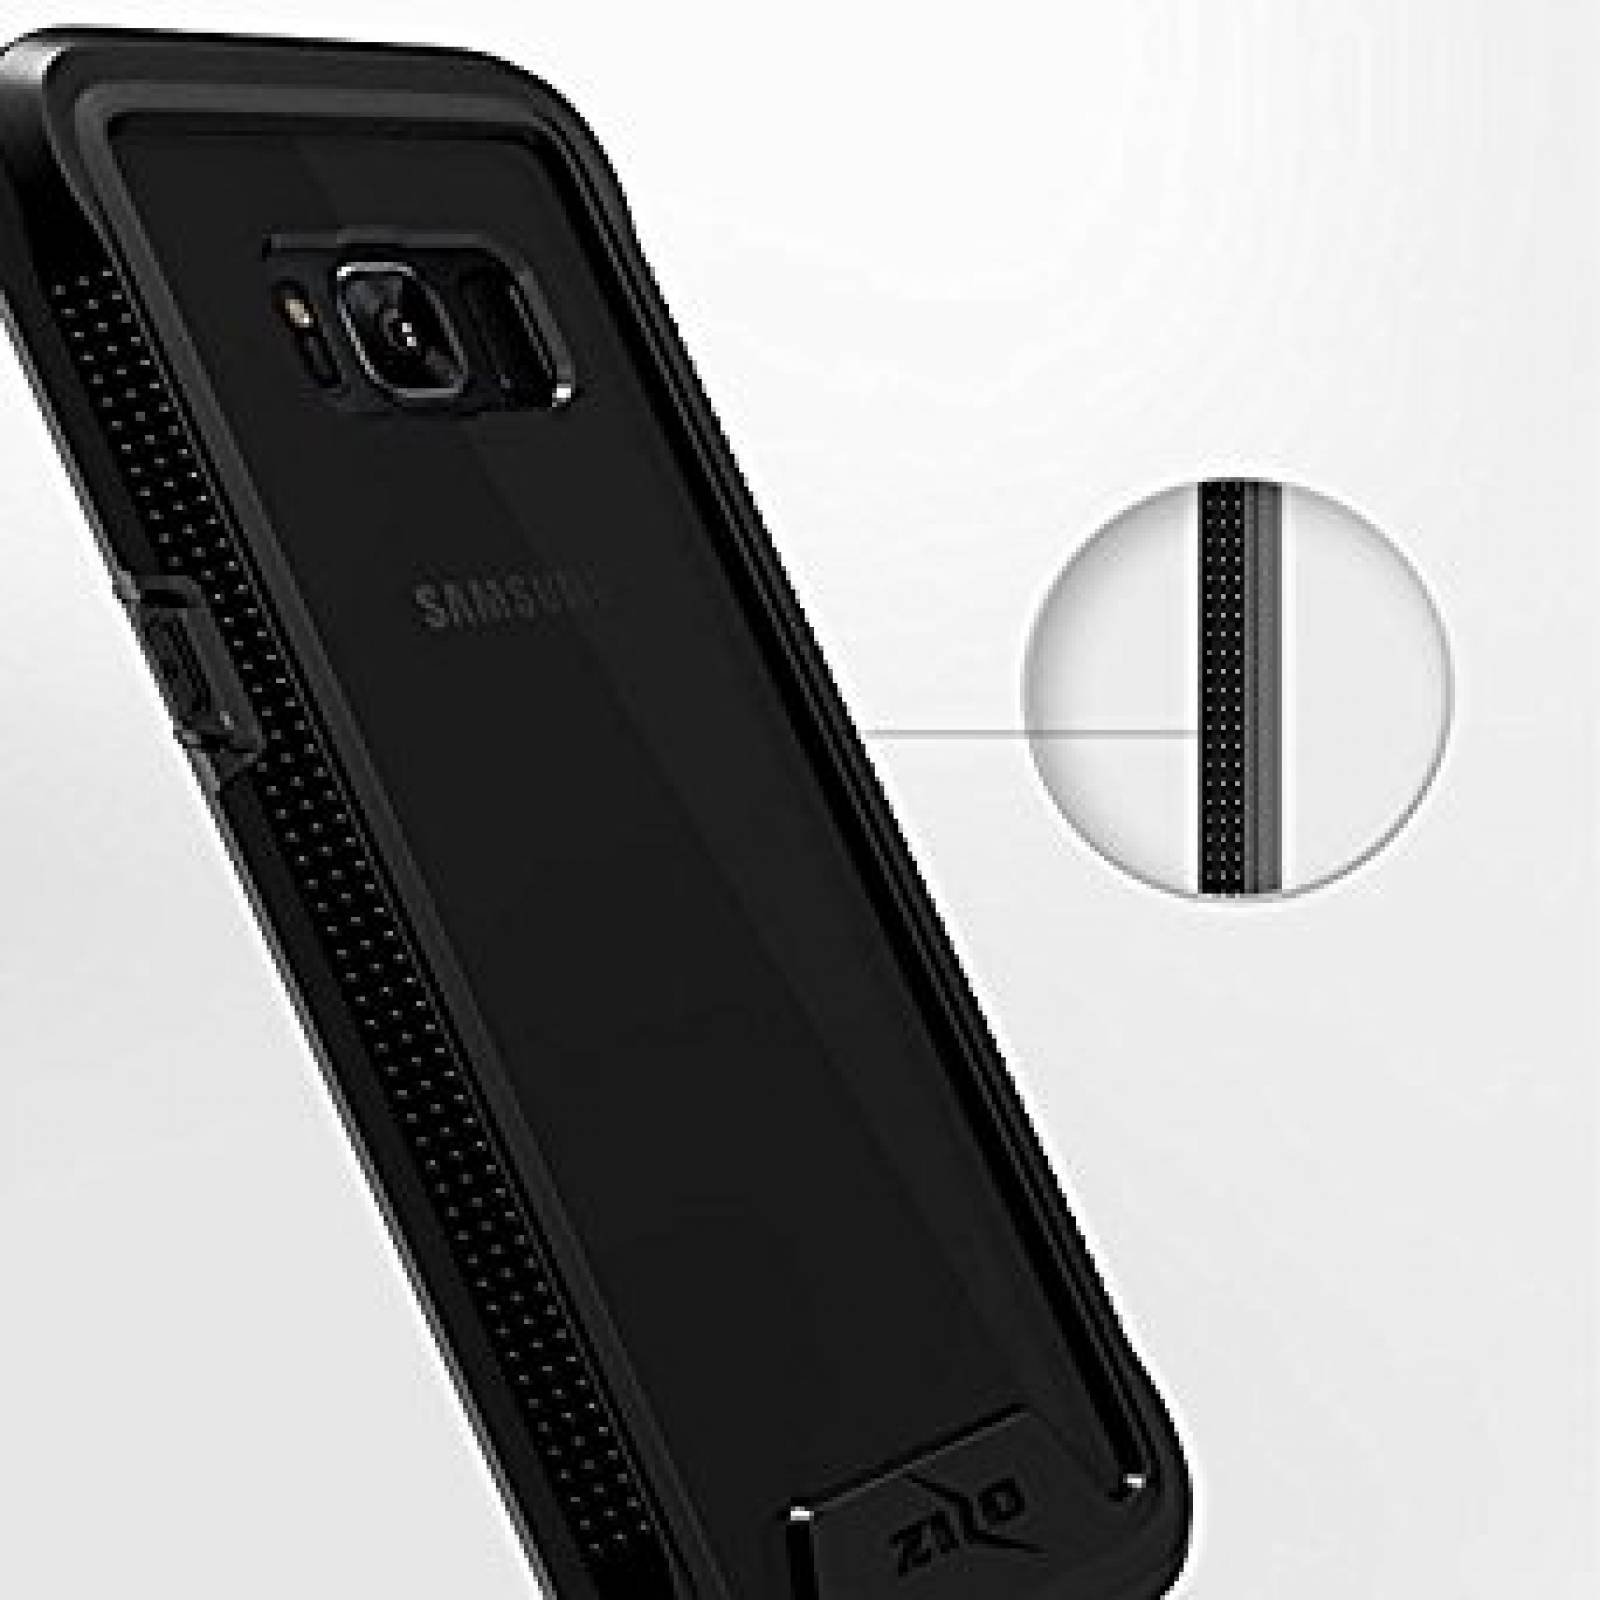 Funda Zizo Ion De Protección Completa Galaxy S8 Plus -negro